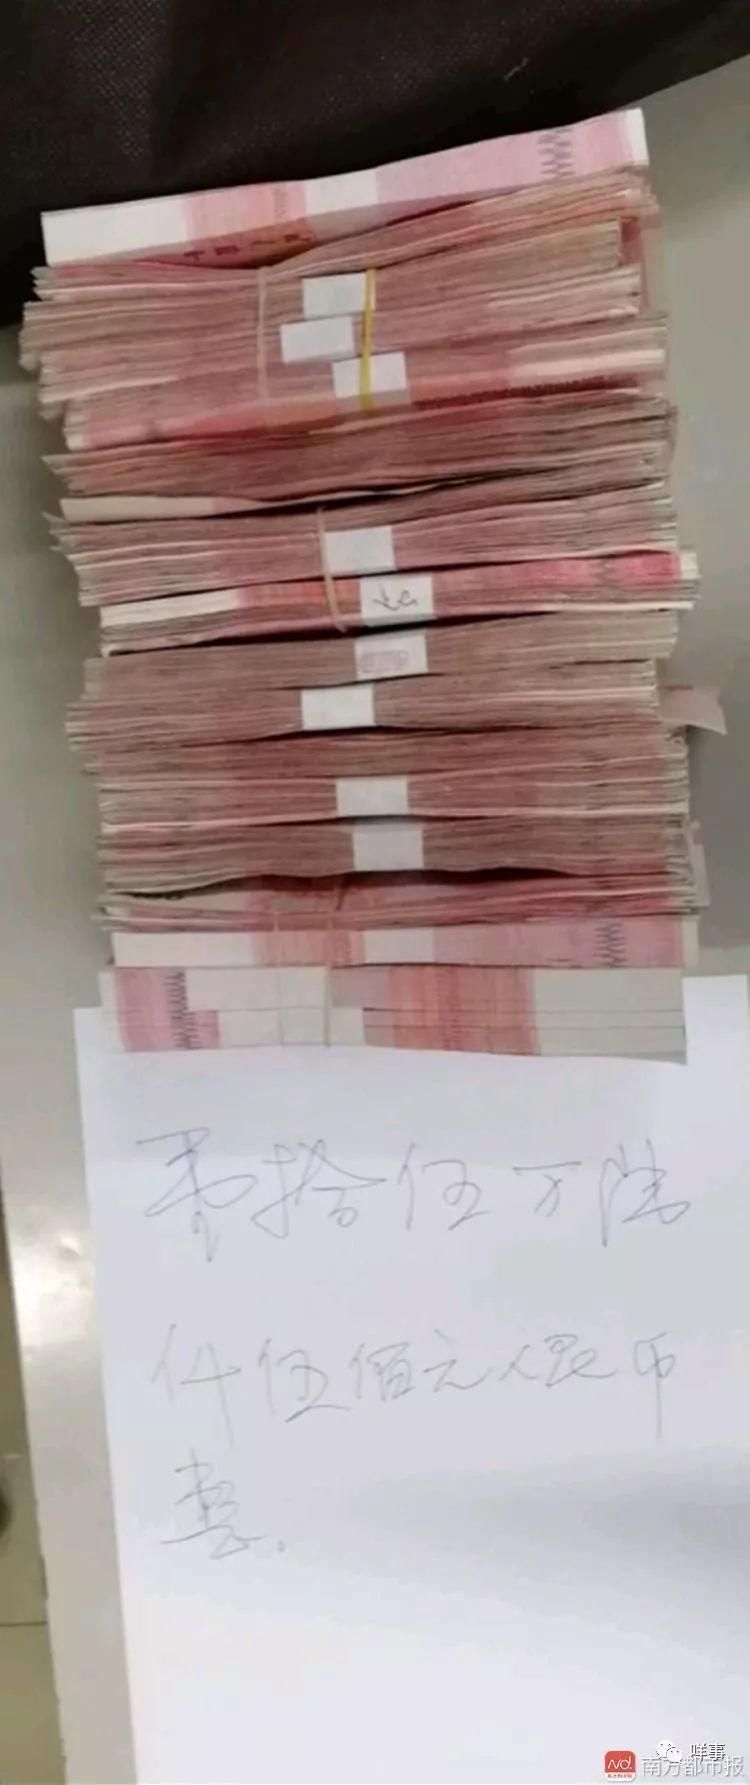 广州女子将15万现金忘在地铁安检机,安检员完璧归赵